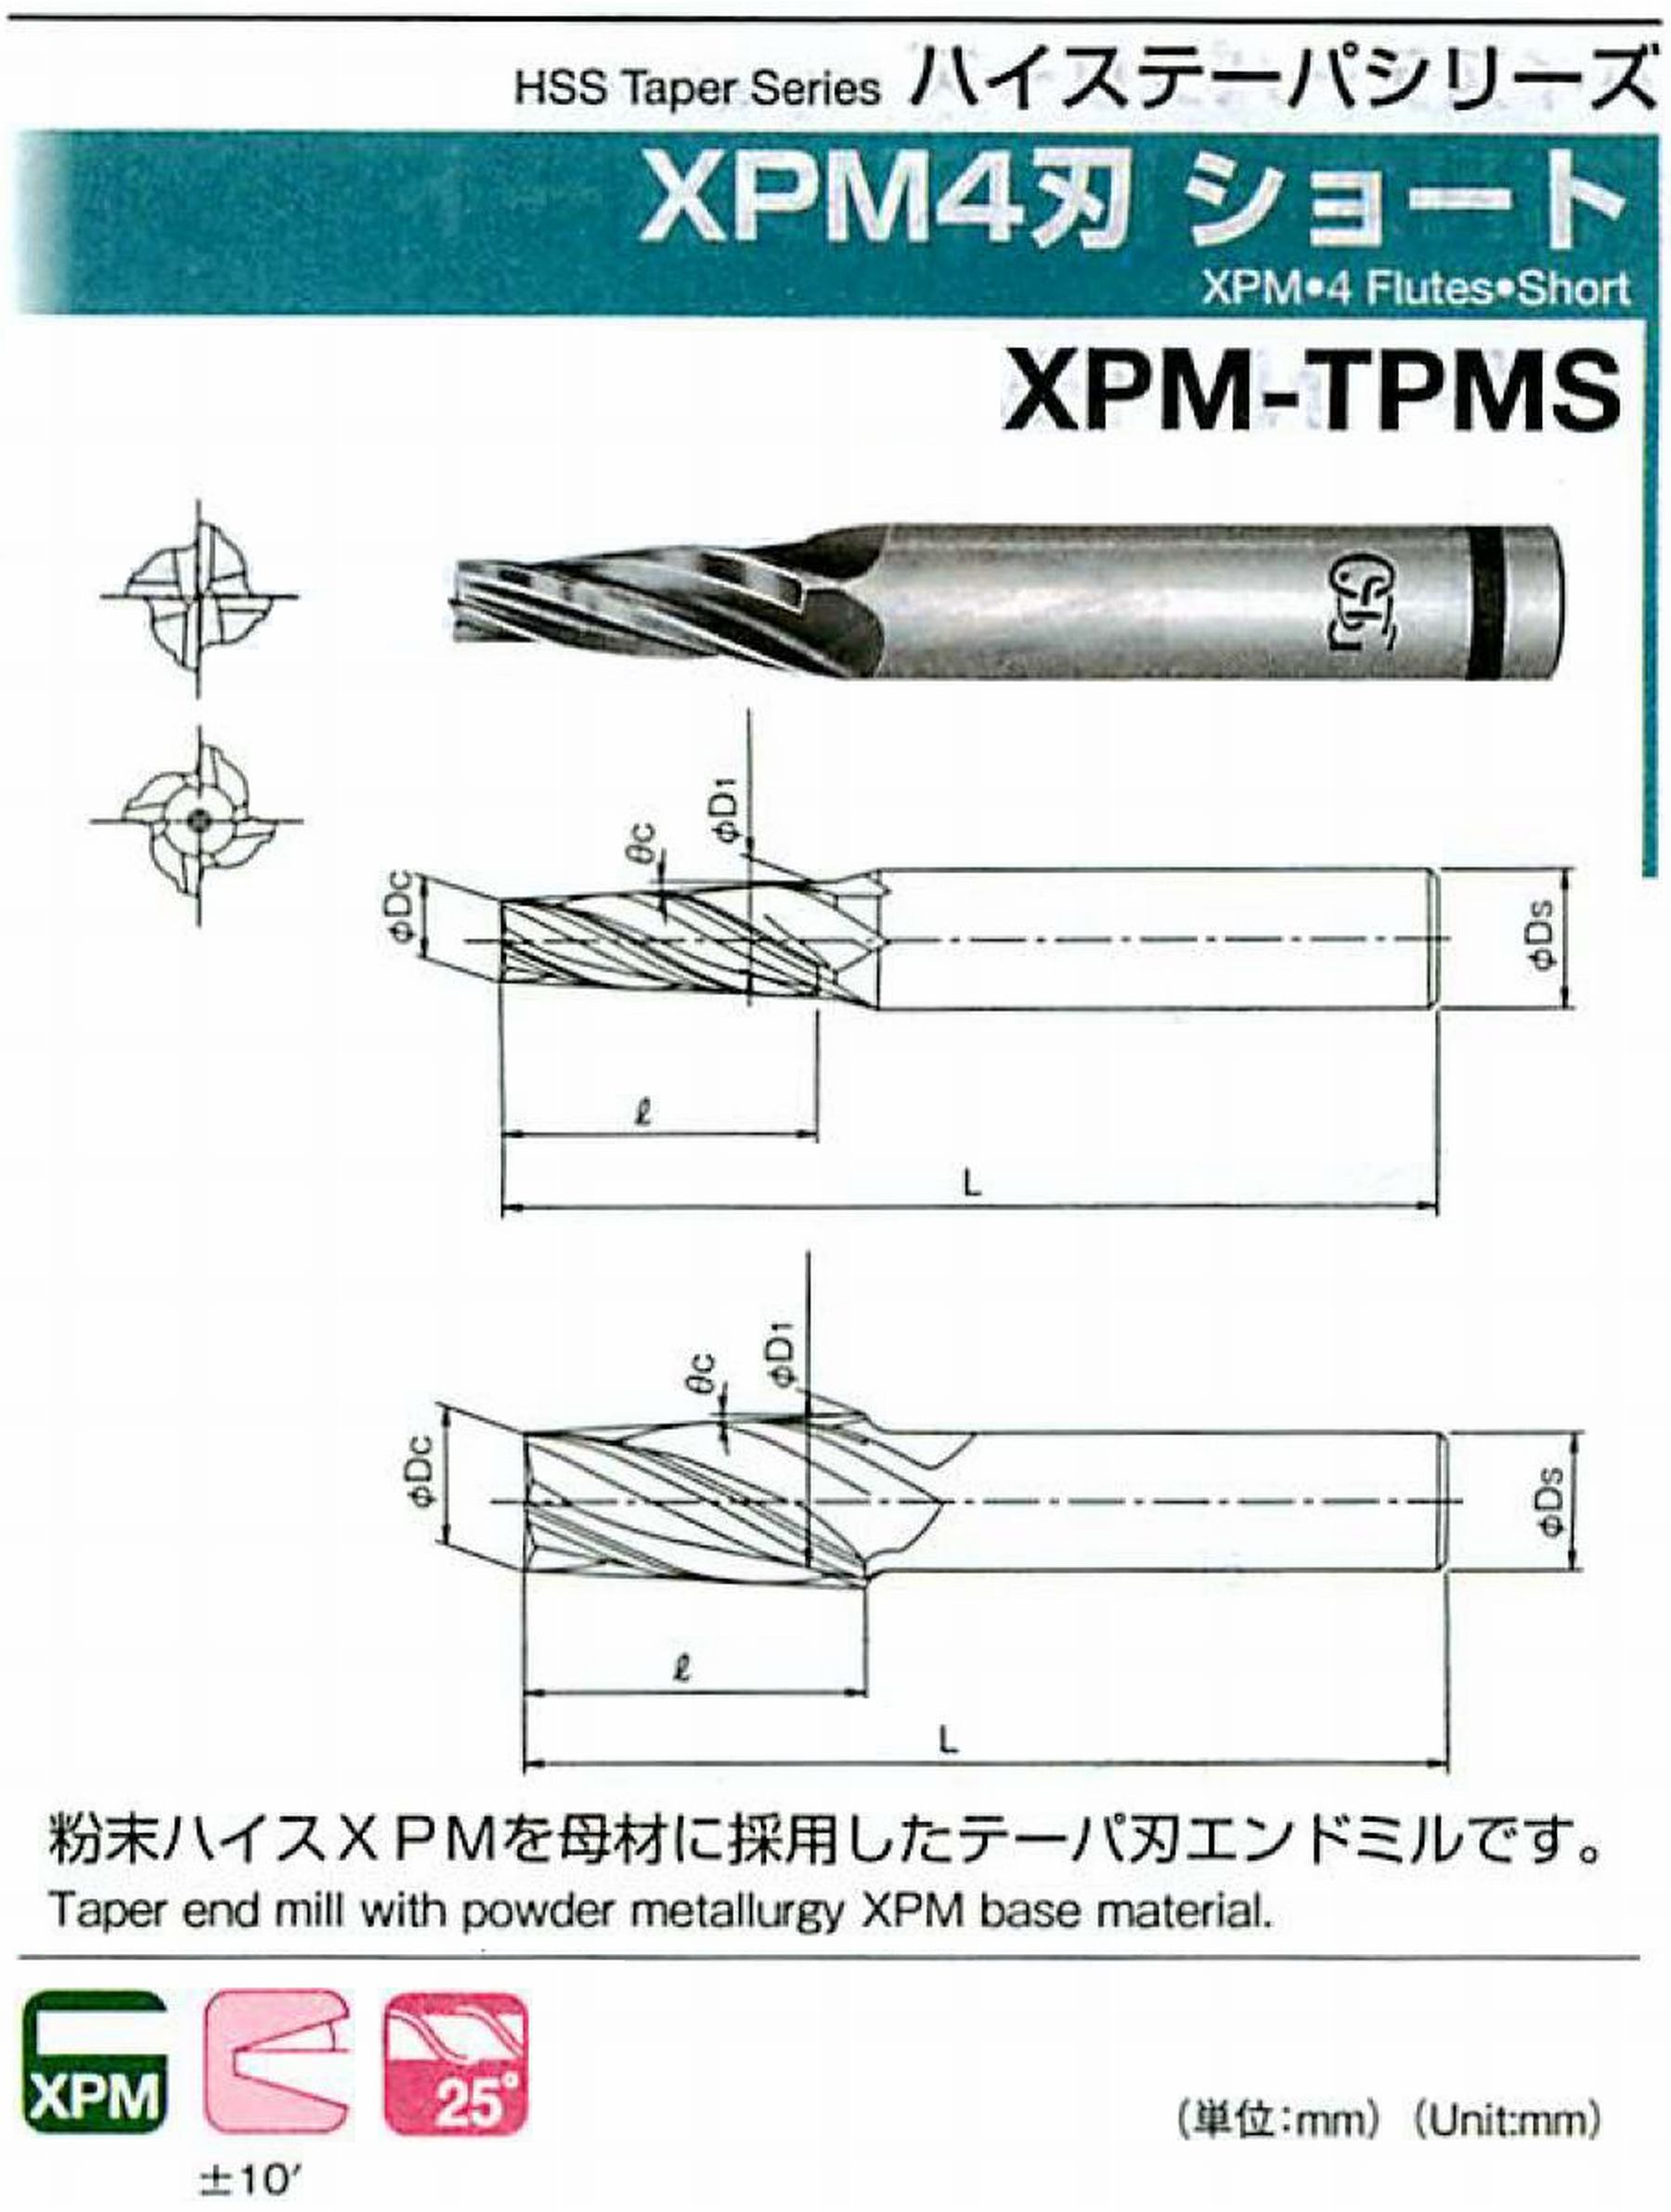 オーエスジー/OSG XPM4刃 ショート XPM-TPMS 外径×刃部テーパ半角3×5°全長62 刃長18 シャンク径8mm 大端径6.15